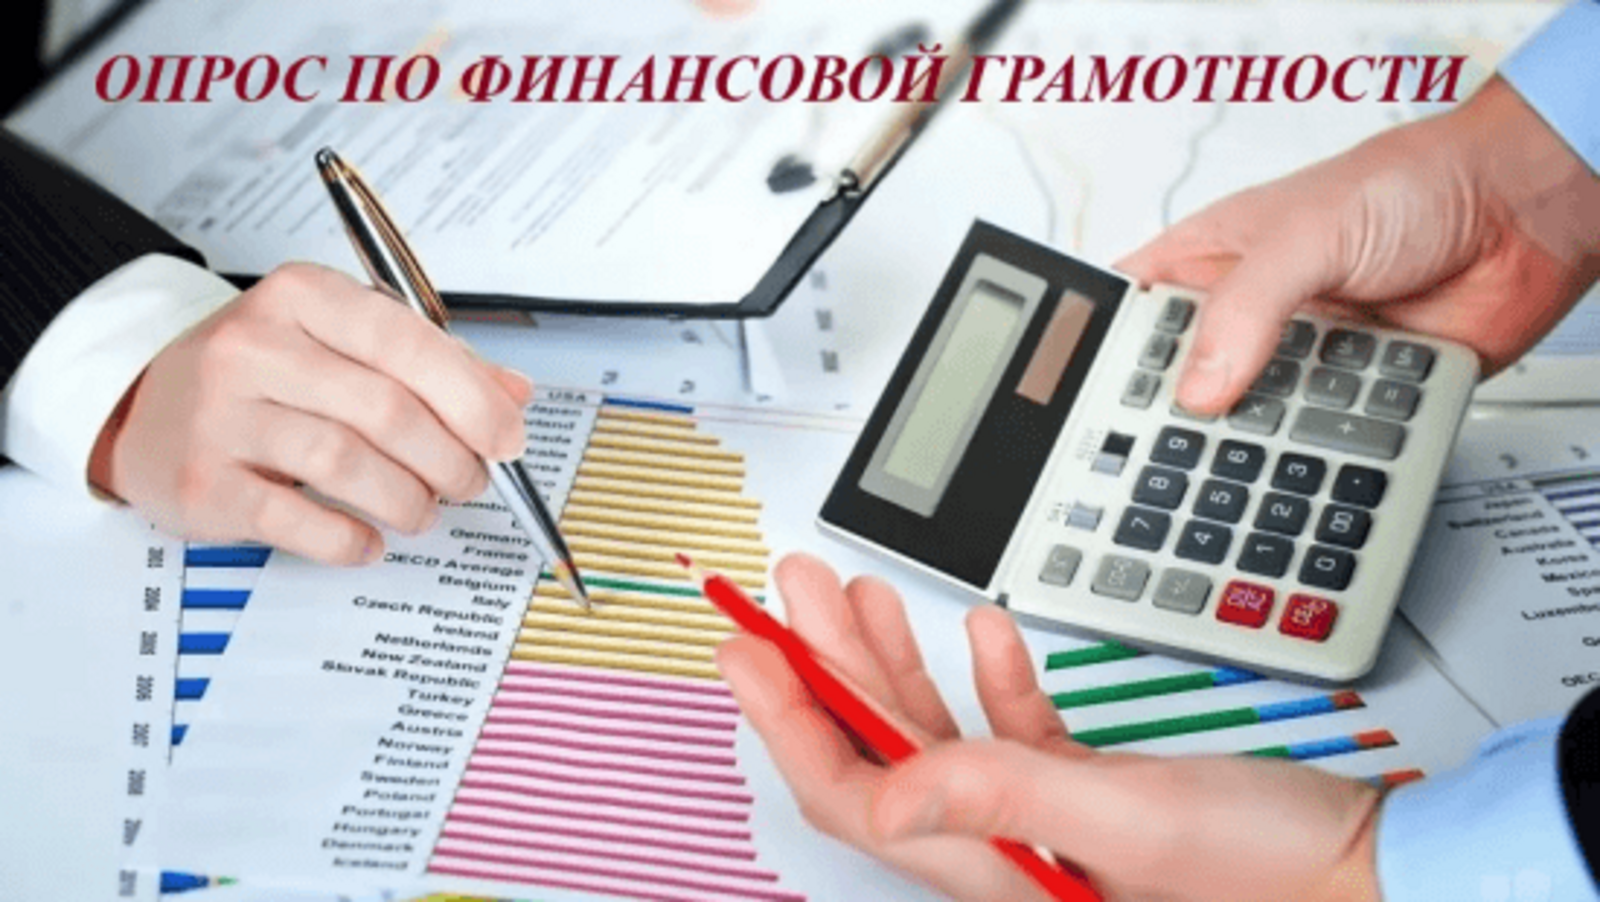 Жителям Башкирии предлагают пройти опрос по финансовой грамотности